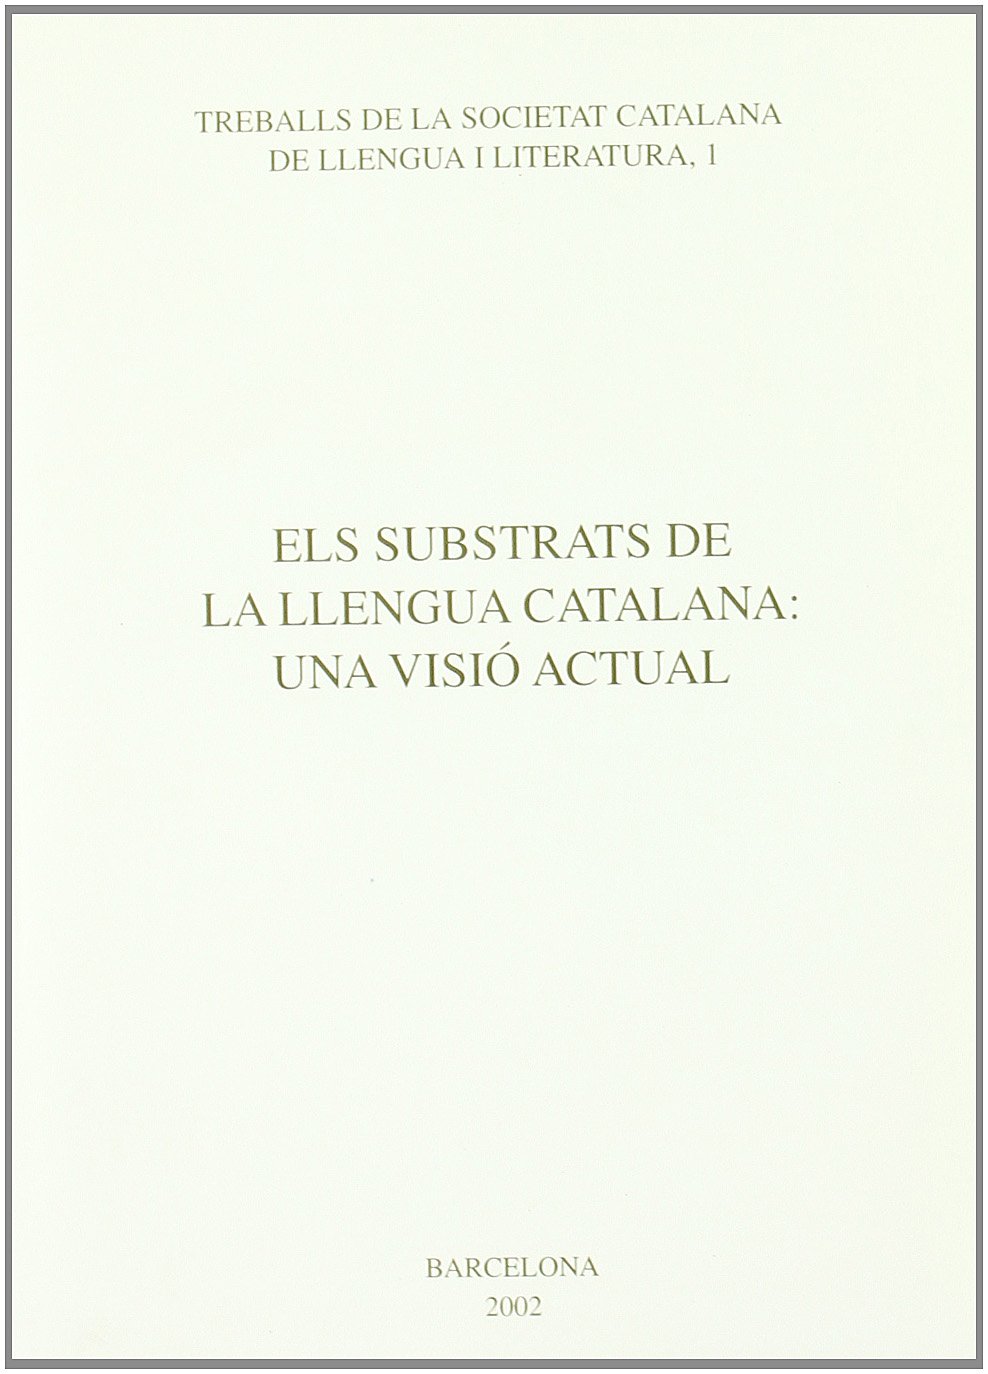 Imagen de portada del libro Els substrats de la llengua catalana